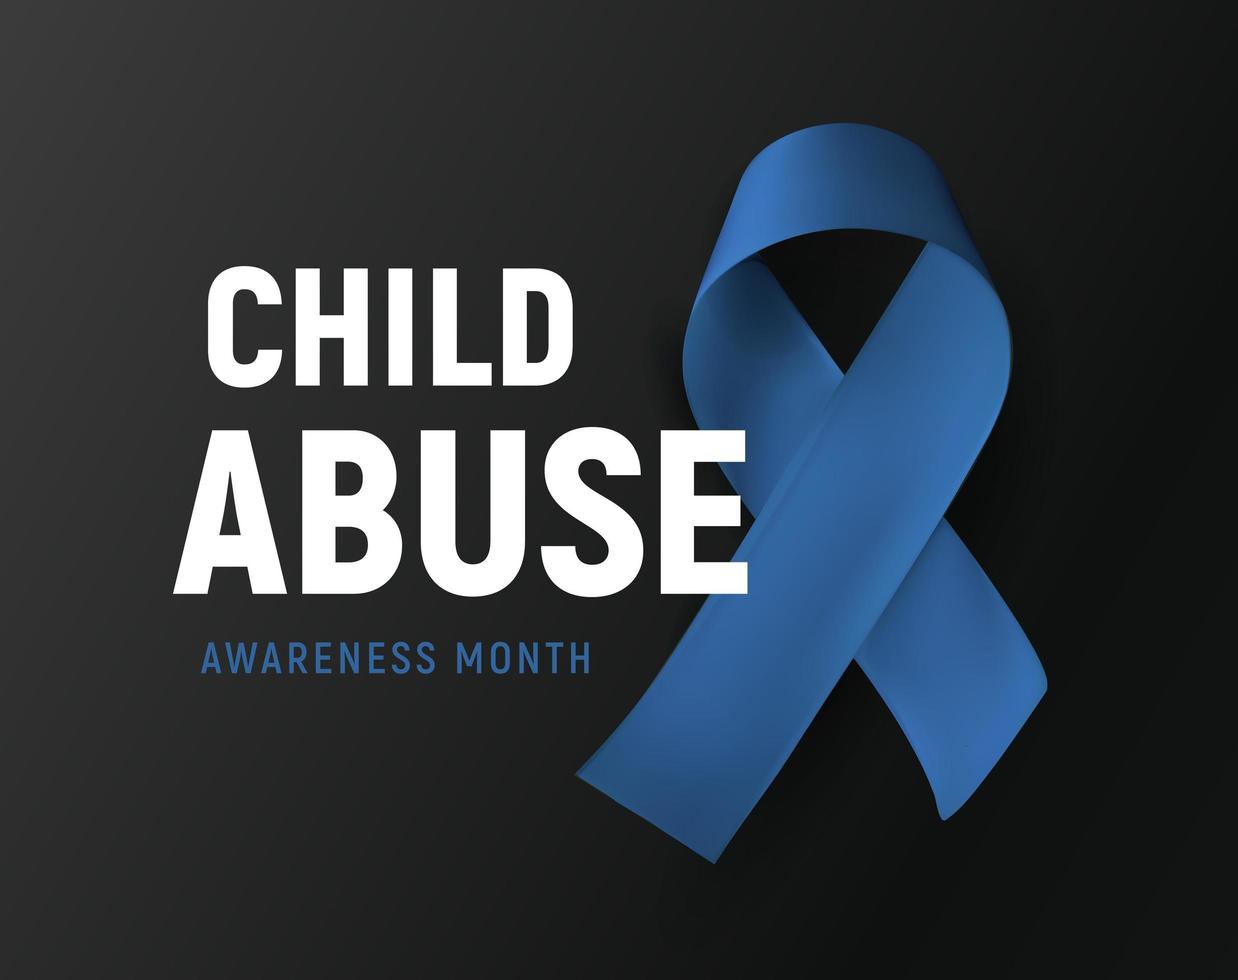 Child abuse awareness month, vector logo, kids violence prevention symbol, blue ribbon on black background, vector illustration